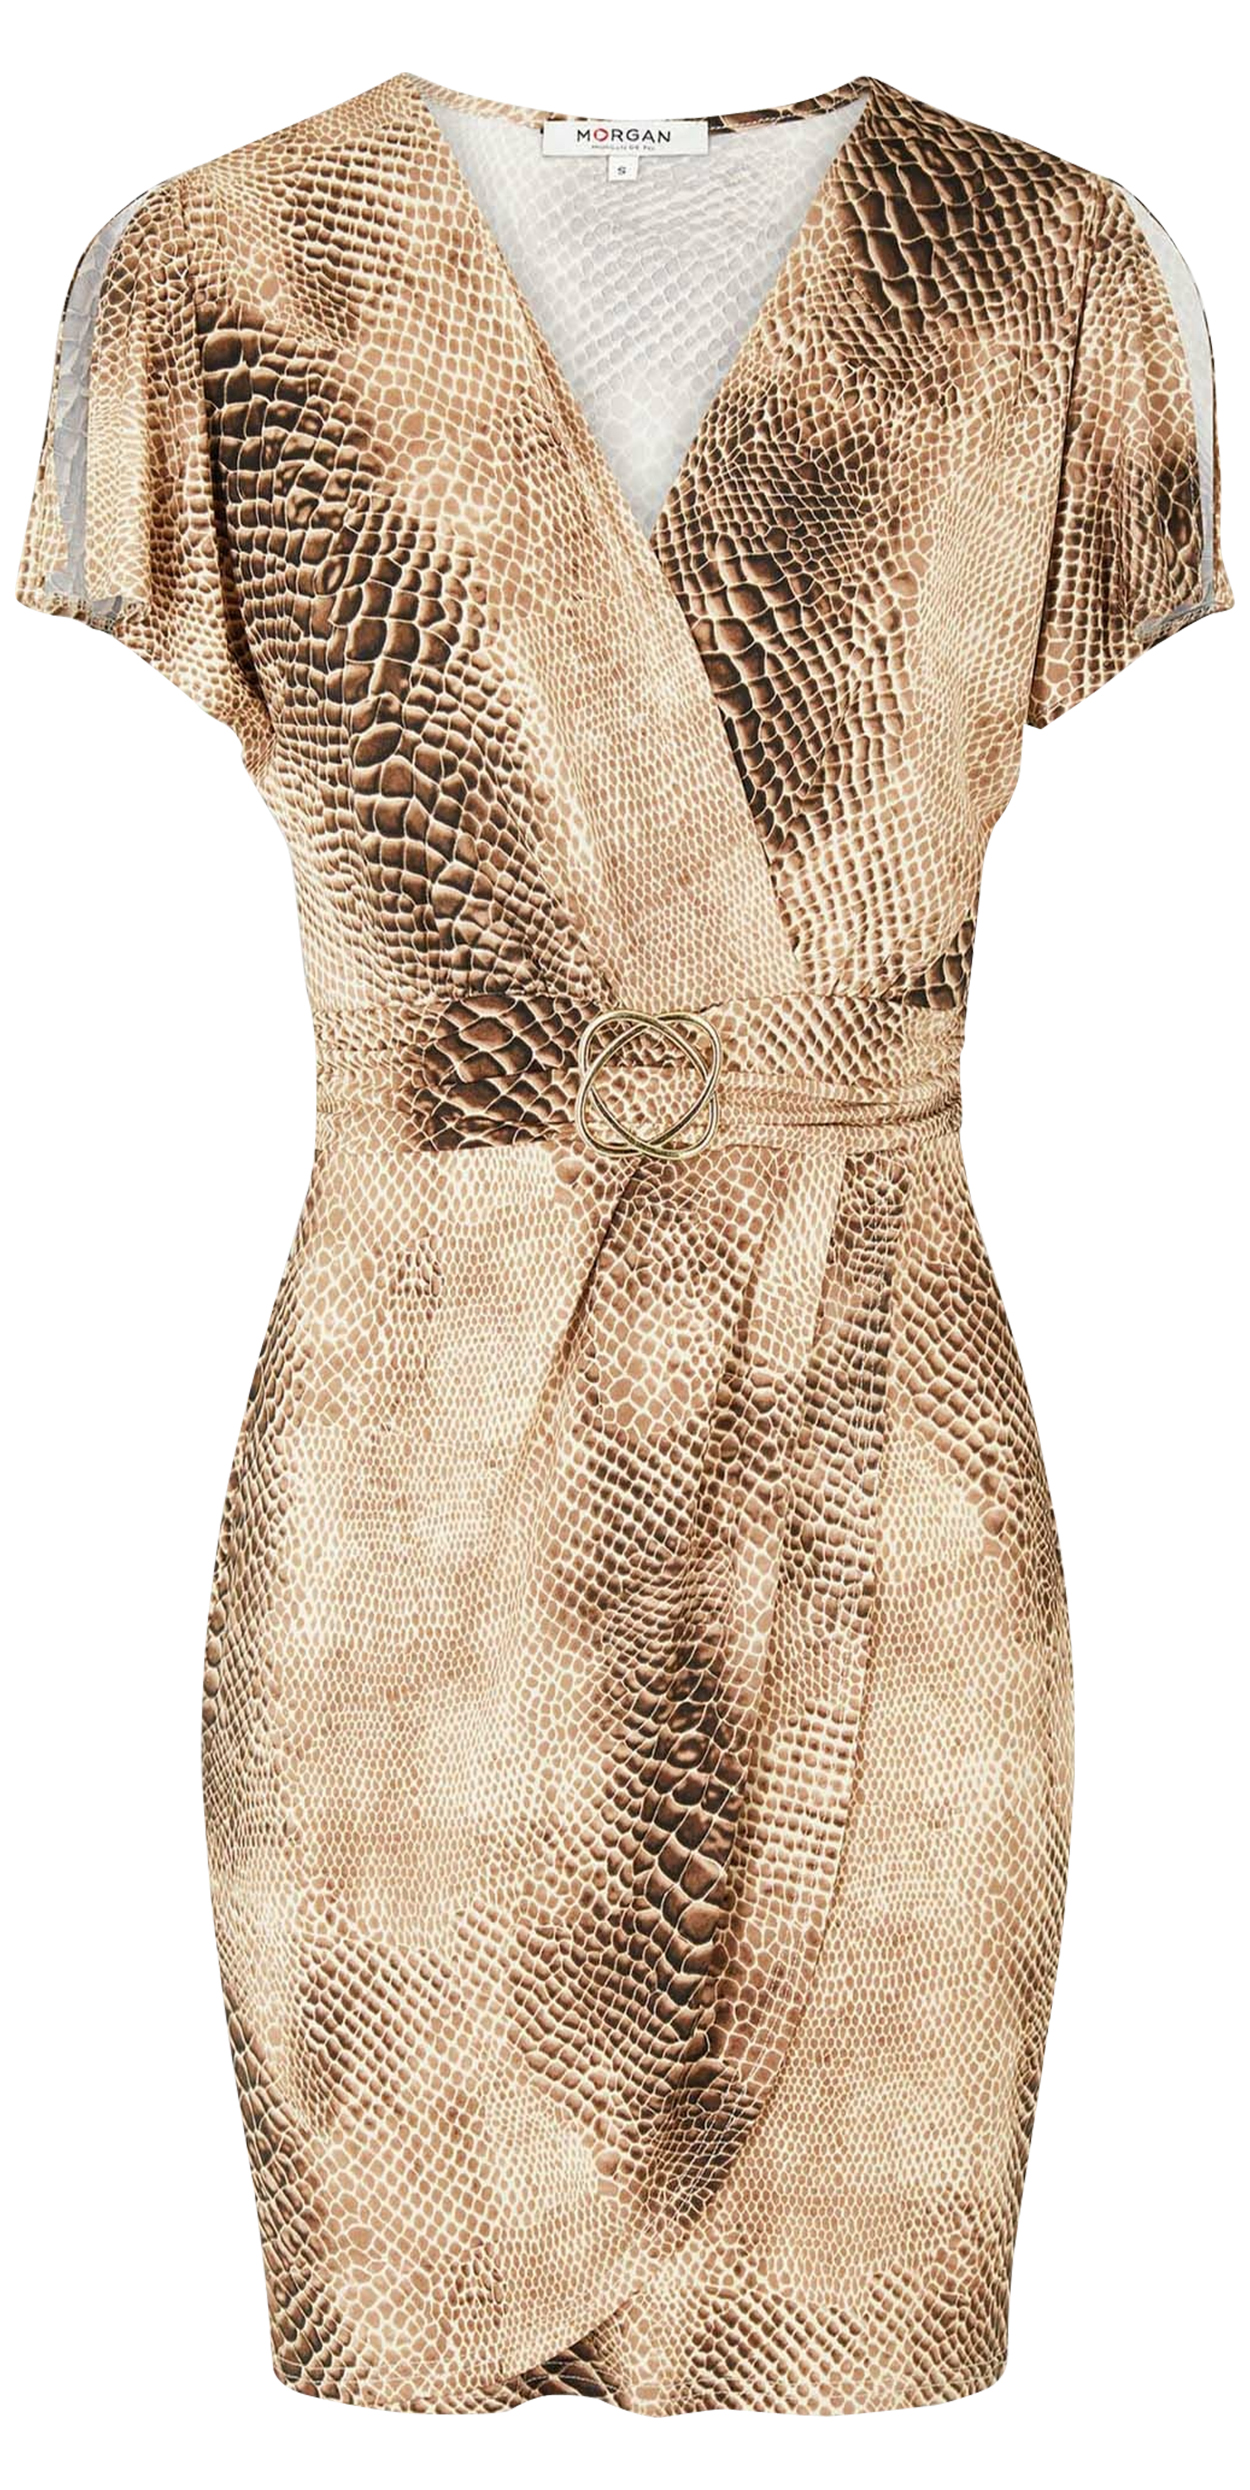 Robe courte FEMME MORGAN avec manches courtes et col v noire imprimé reptile